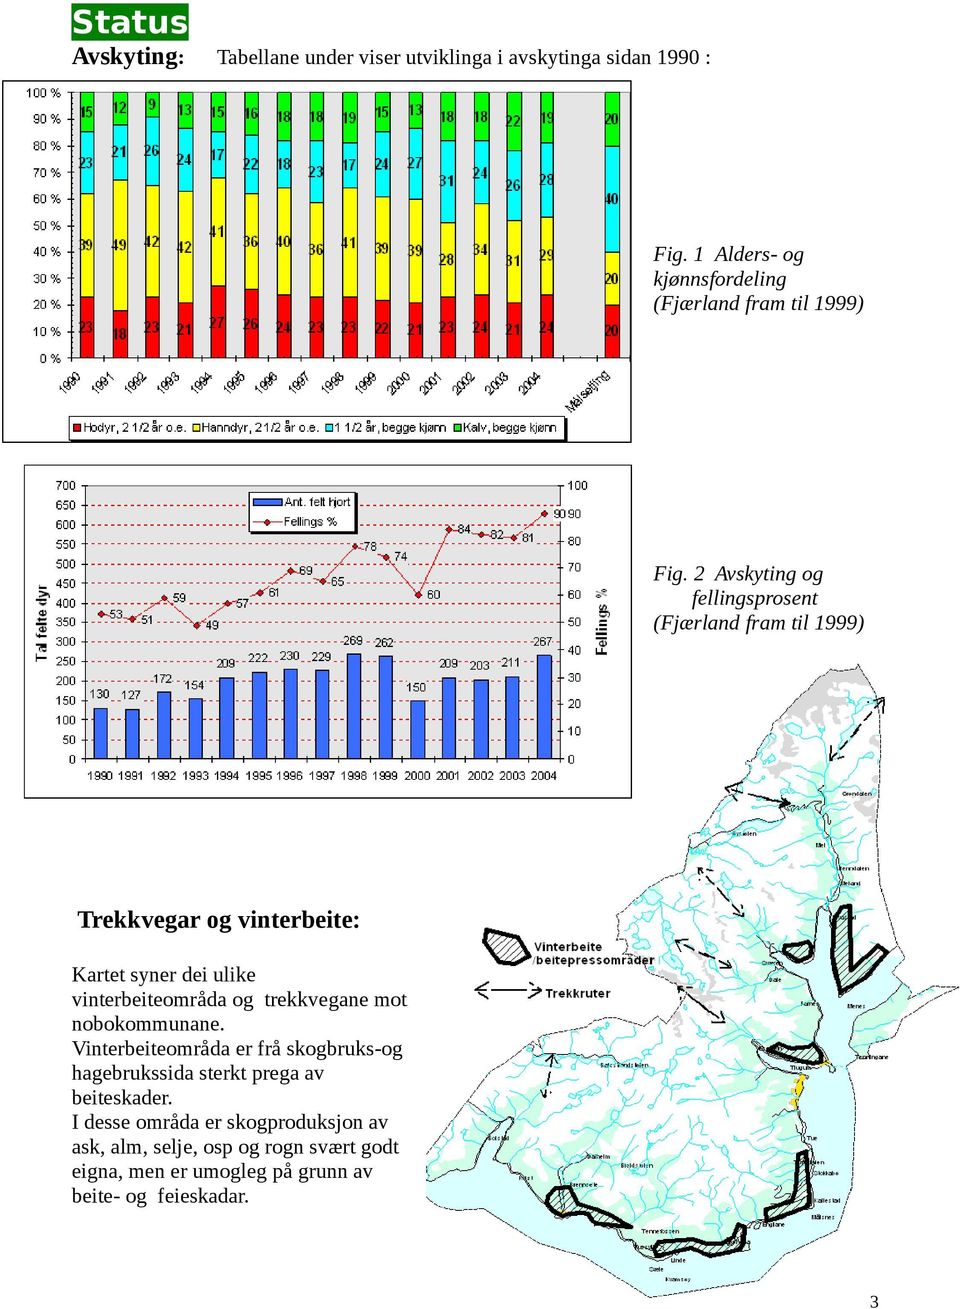 2 Avskyting og fellingsprosent (Fjærland fram til 1999) Trekkvegar og vinterbeite: Kartet syner dei ulike vinterbeiteområda og